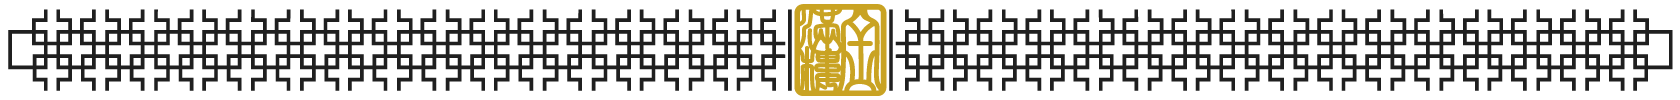 Golden logo